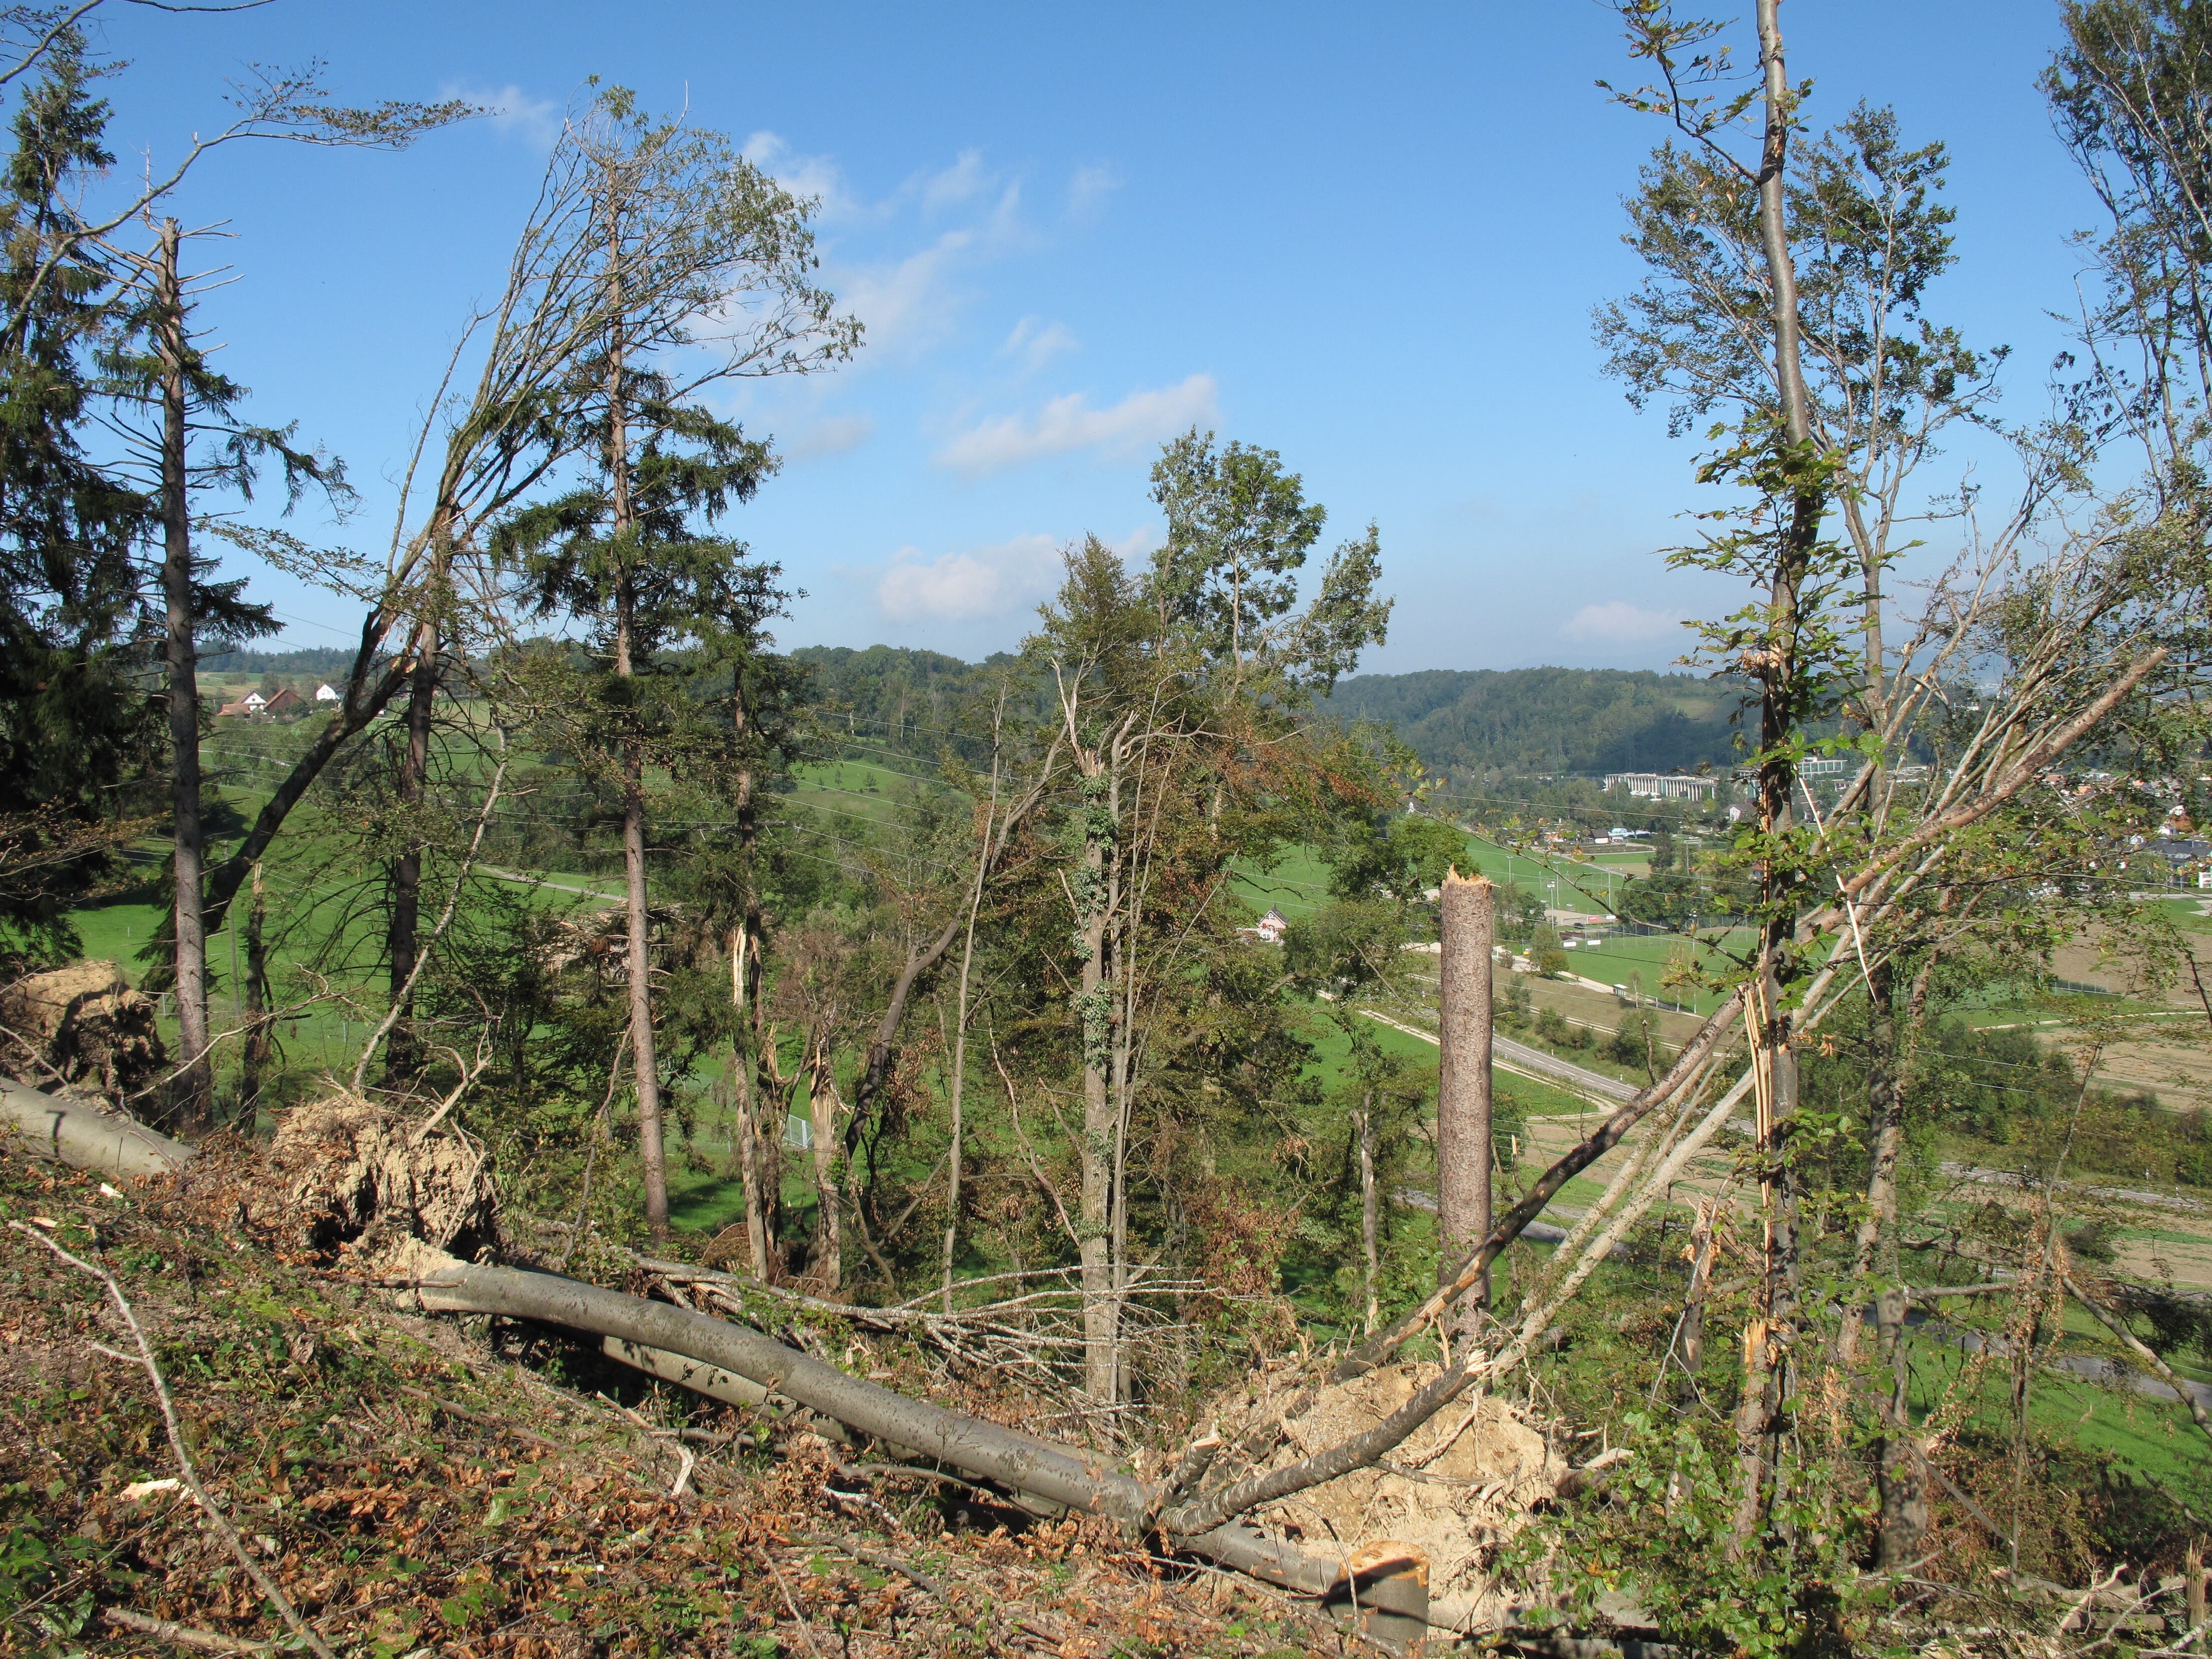 Die meisten noch intakten Bäume müssen gefällt werden. Dies, weil sie durch die Schäden an benachbarten Bäumen in Mitleidenschaft gezogen worden sein könnten.